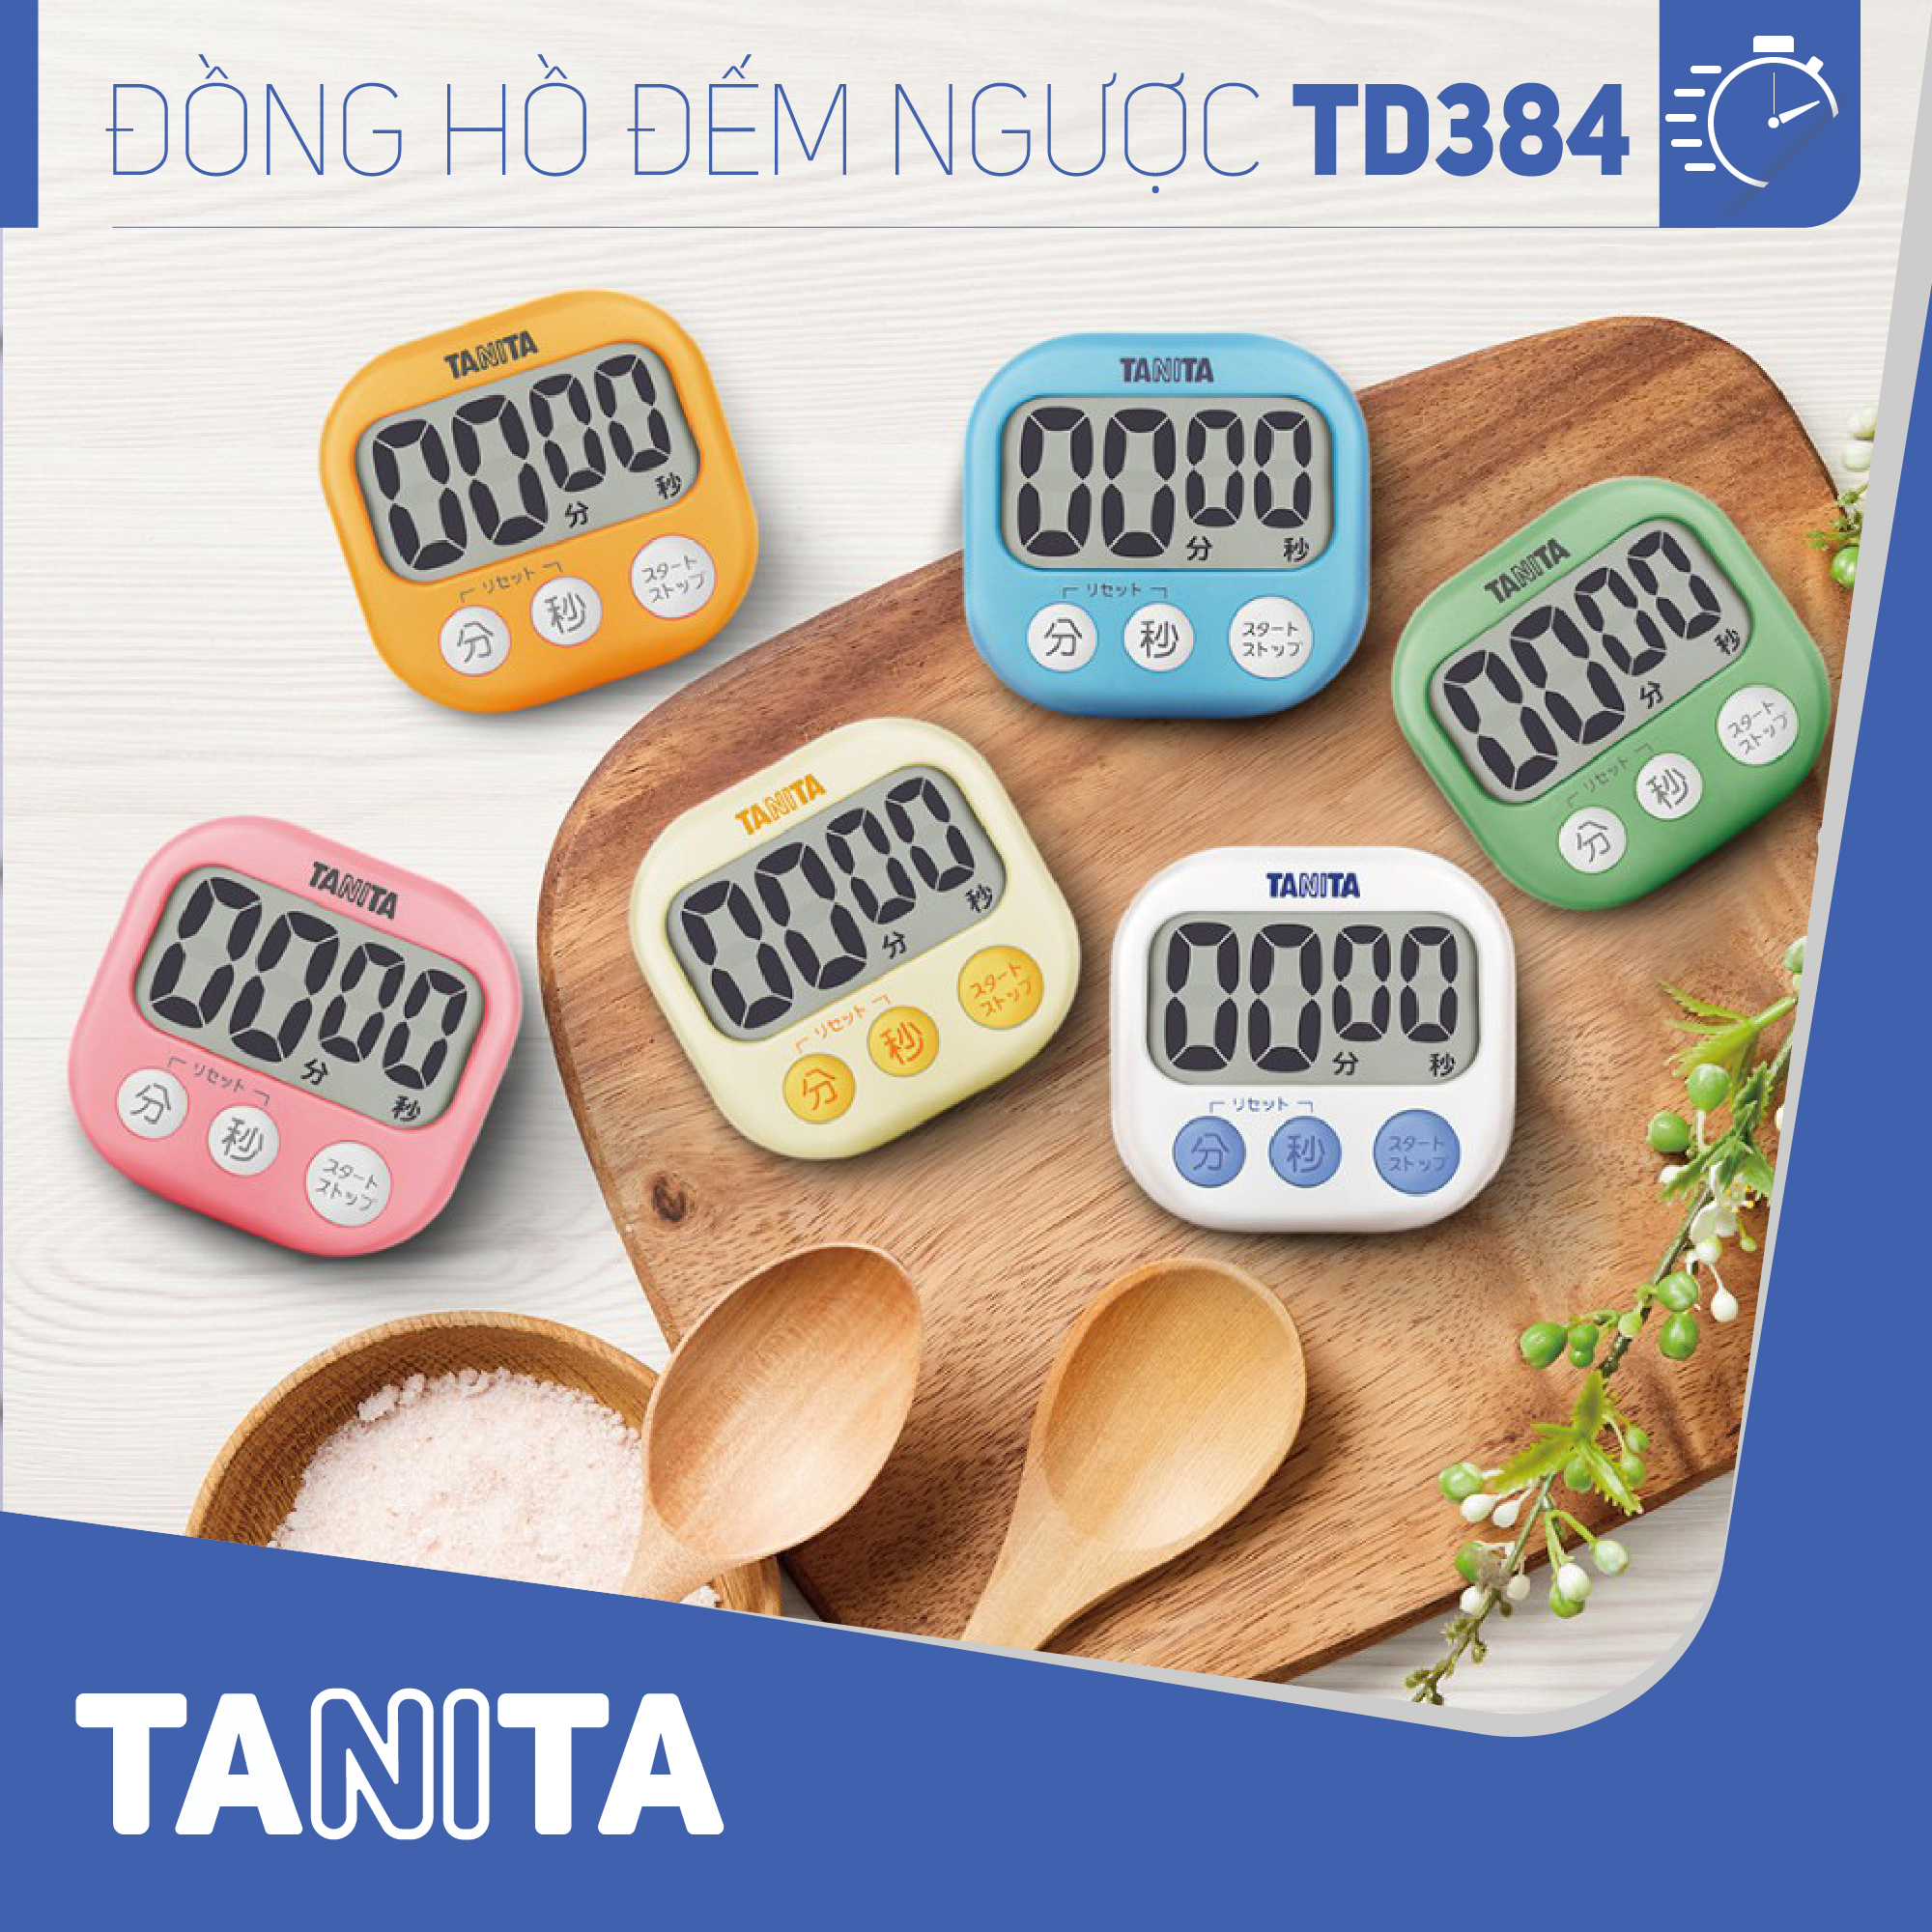 Đồng hồ đếm ngược Tanita TD384,Đồng hồ mini đếm ngược bấm giờ,Đồng hồ mini bấm giờ,Đồng hồ hẹn giờ,Đồng hồ bếp,Đồng hồ đếm ngược thời gian,đồng hồ bấm giờ đếm ngược,Đồng hồ điện tử đếm giờ,Đồng hồ điện tử đếm ngược,Đồng hồ nhật bản